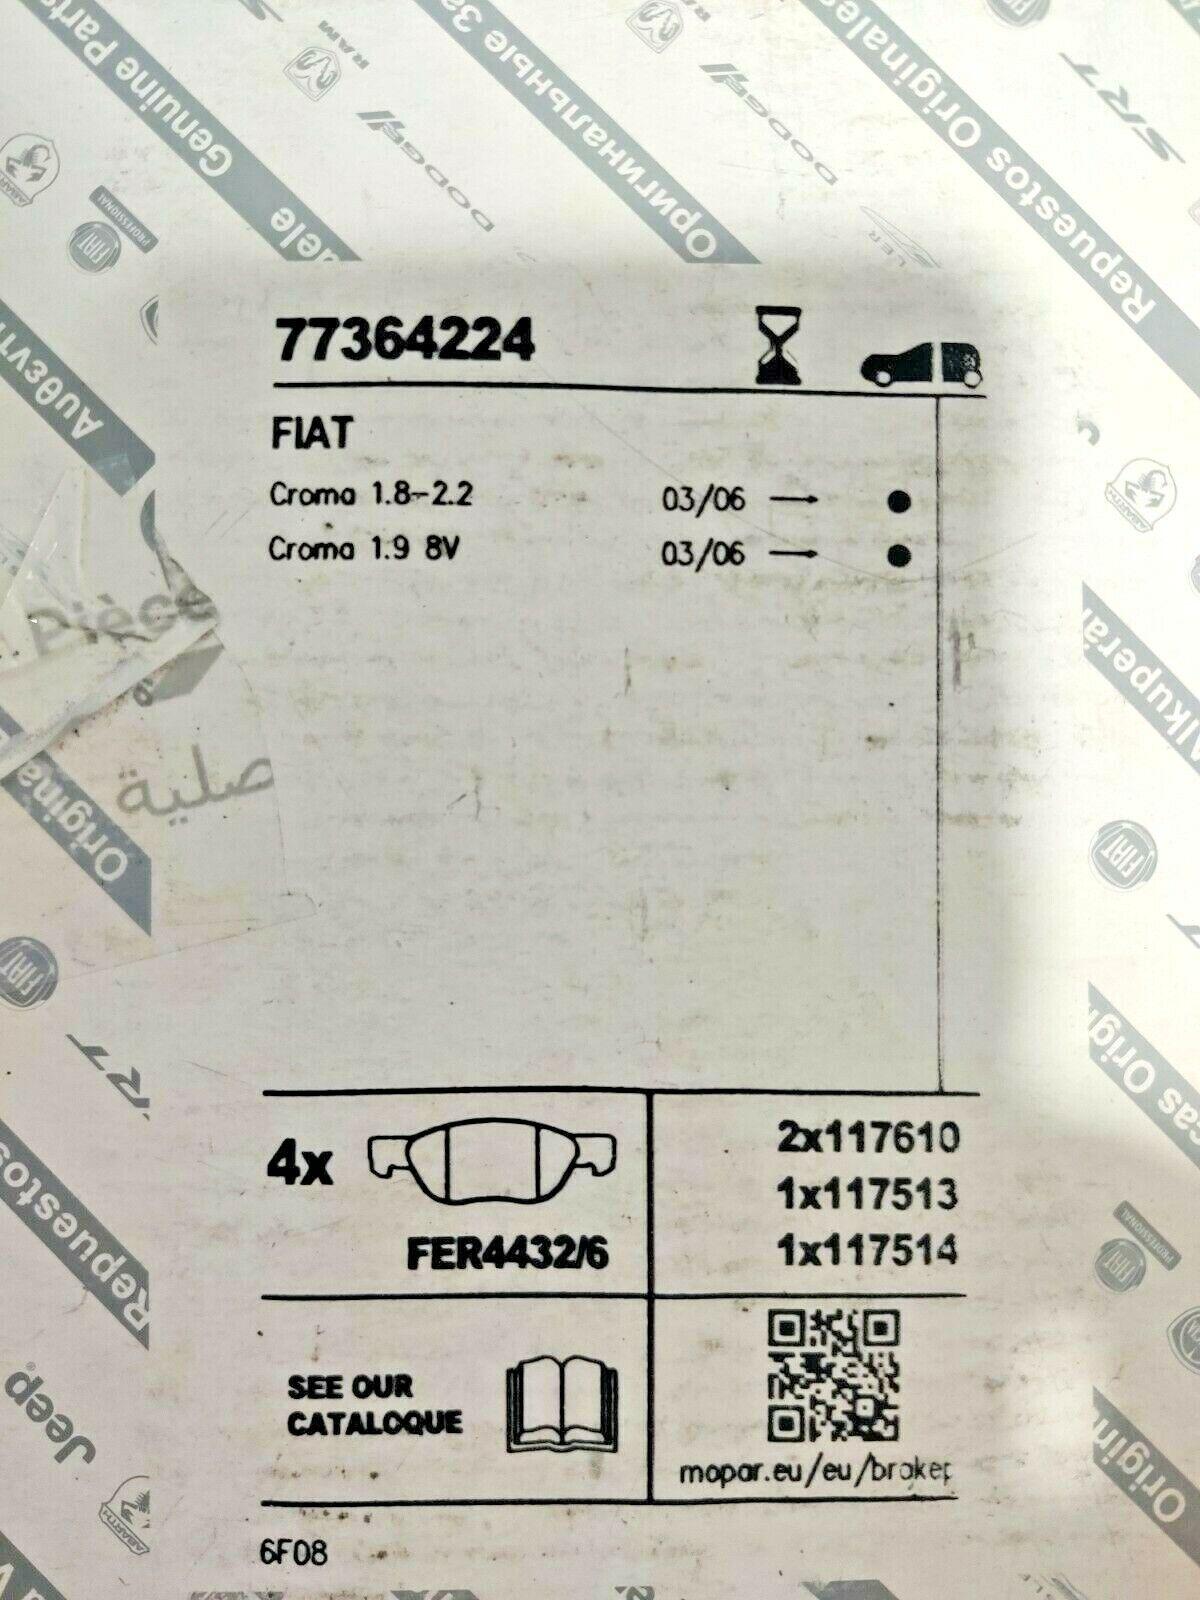 FCA set pastiglie anteriori originali Fiat Croma II 77364224